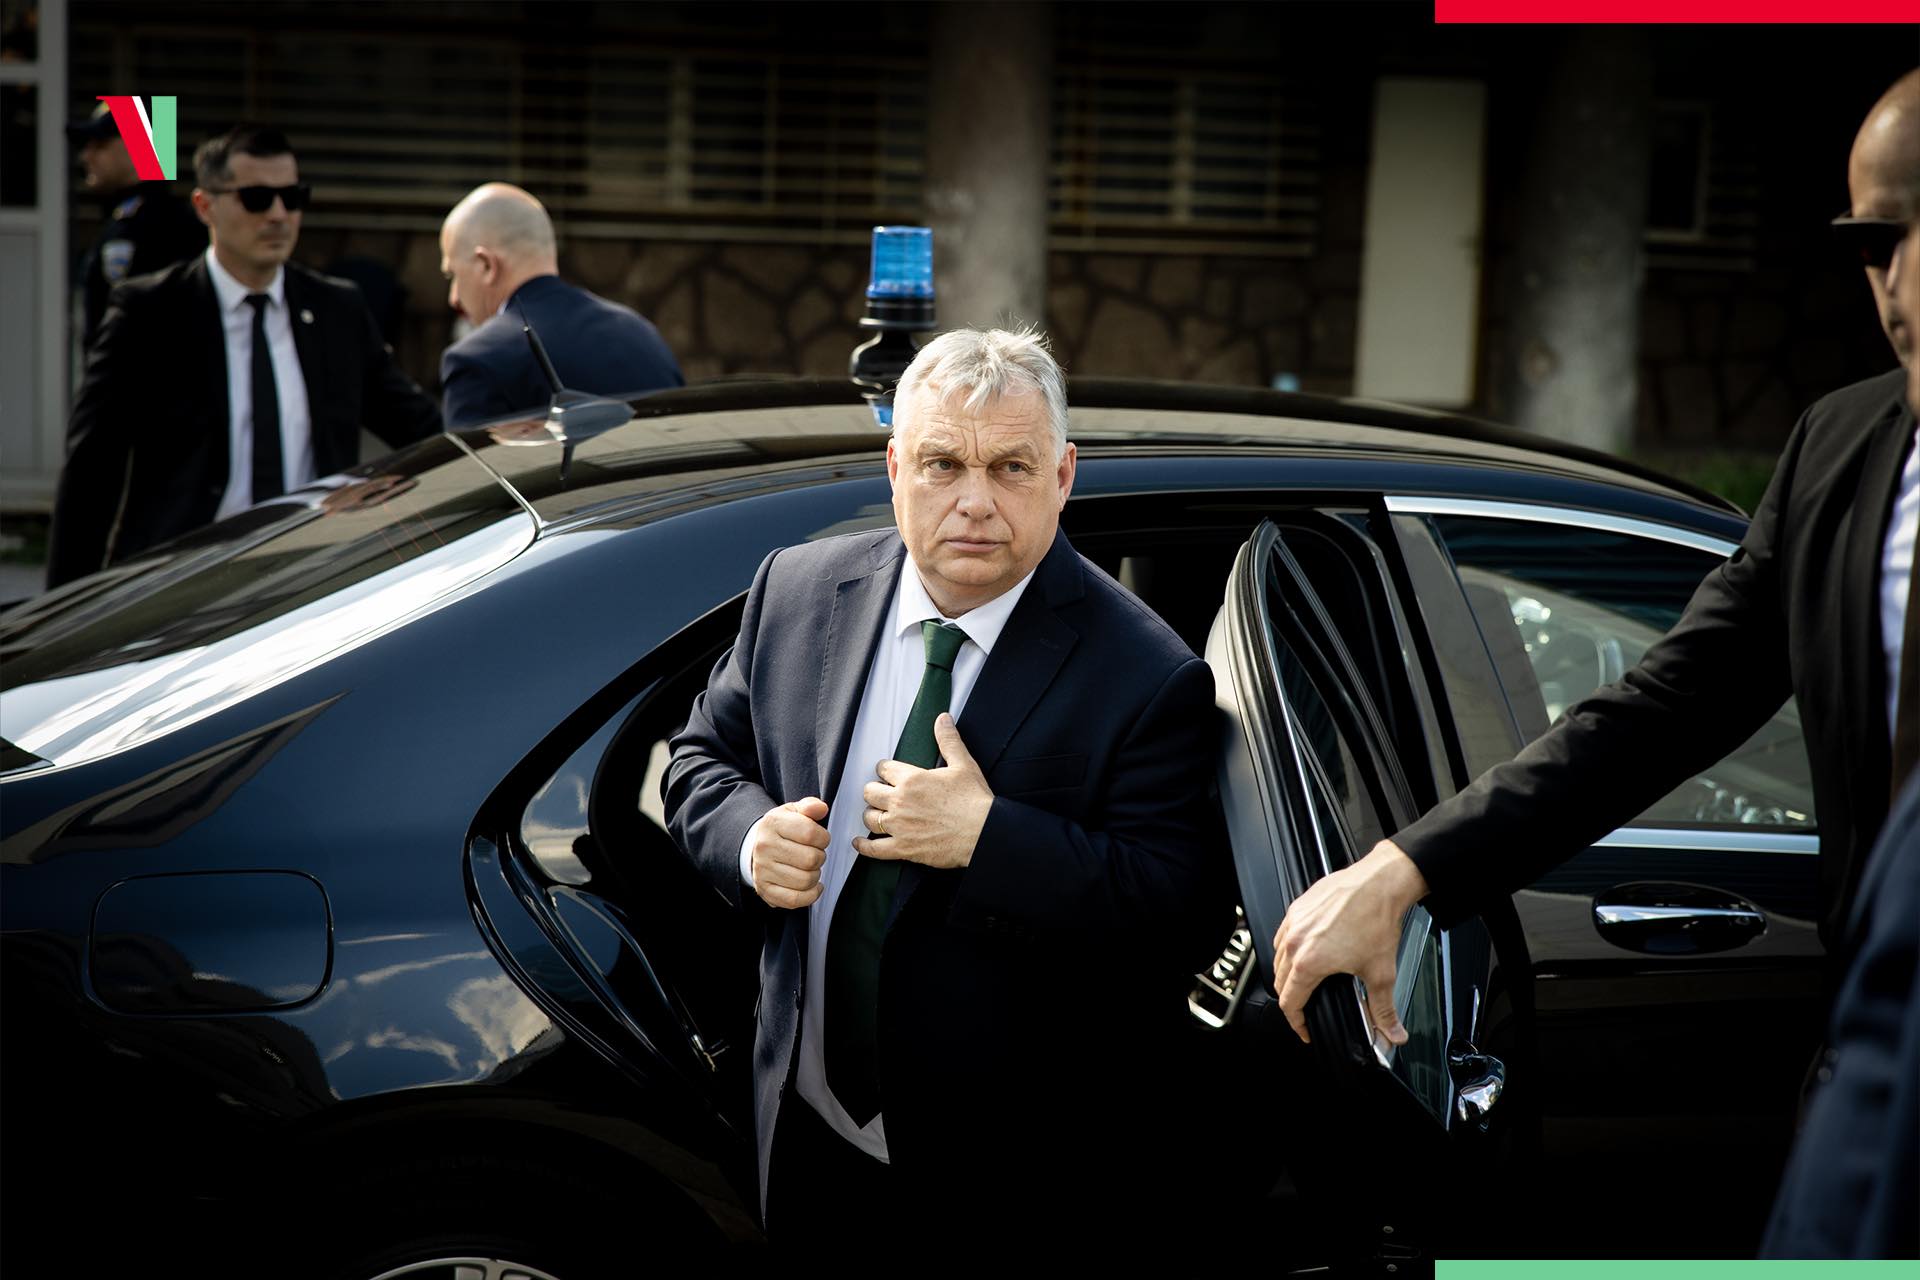 Háború: reagált a magyar kormány, Orbán Viktor összehívta a Védelmi Tanácsot